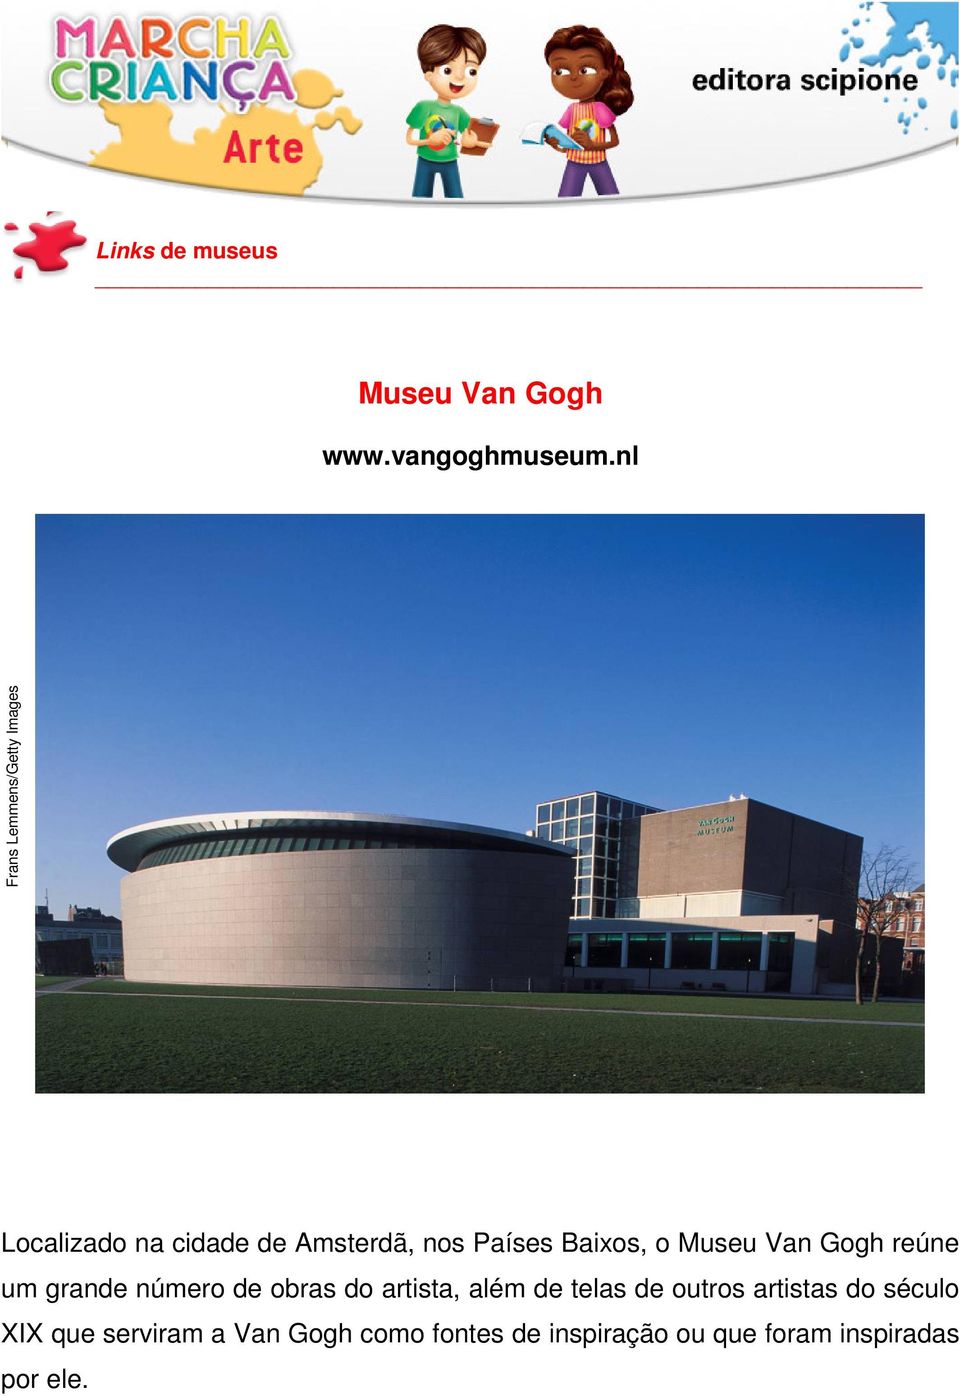 Baixos, o Museu Van Gogh reúne um grande número de obras do artista, além de